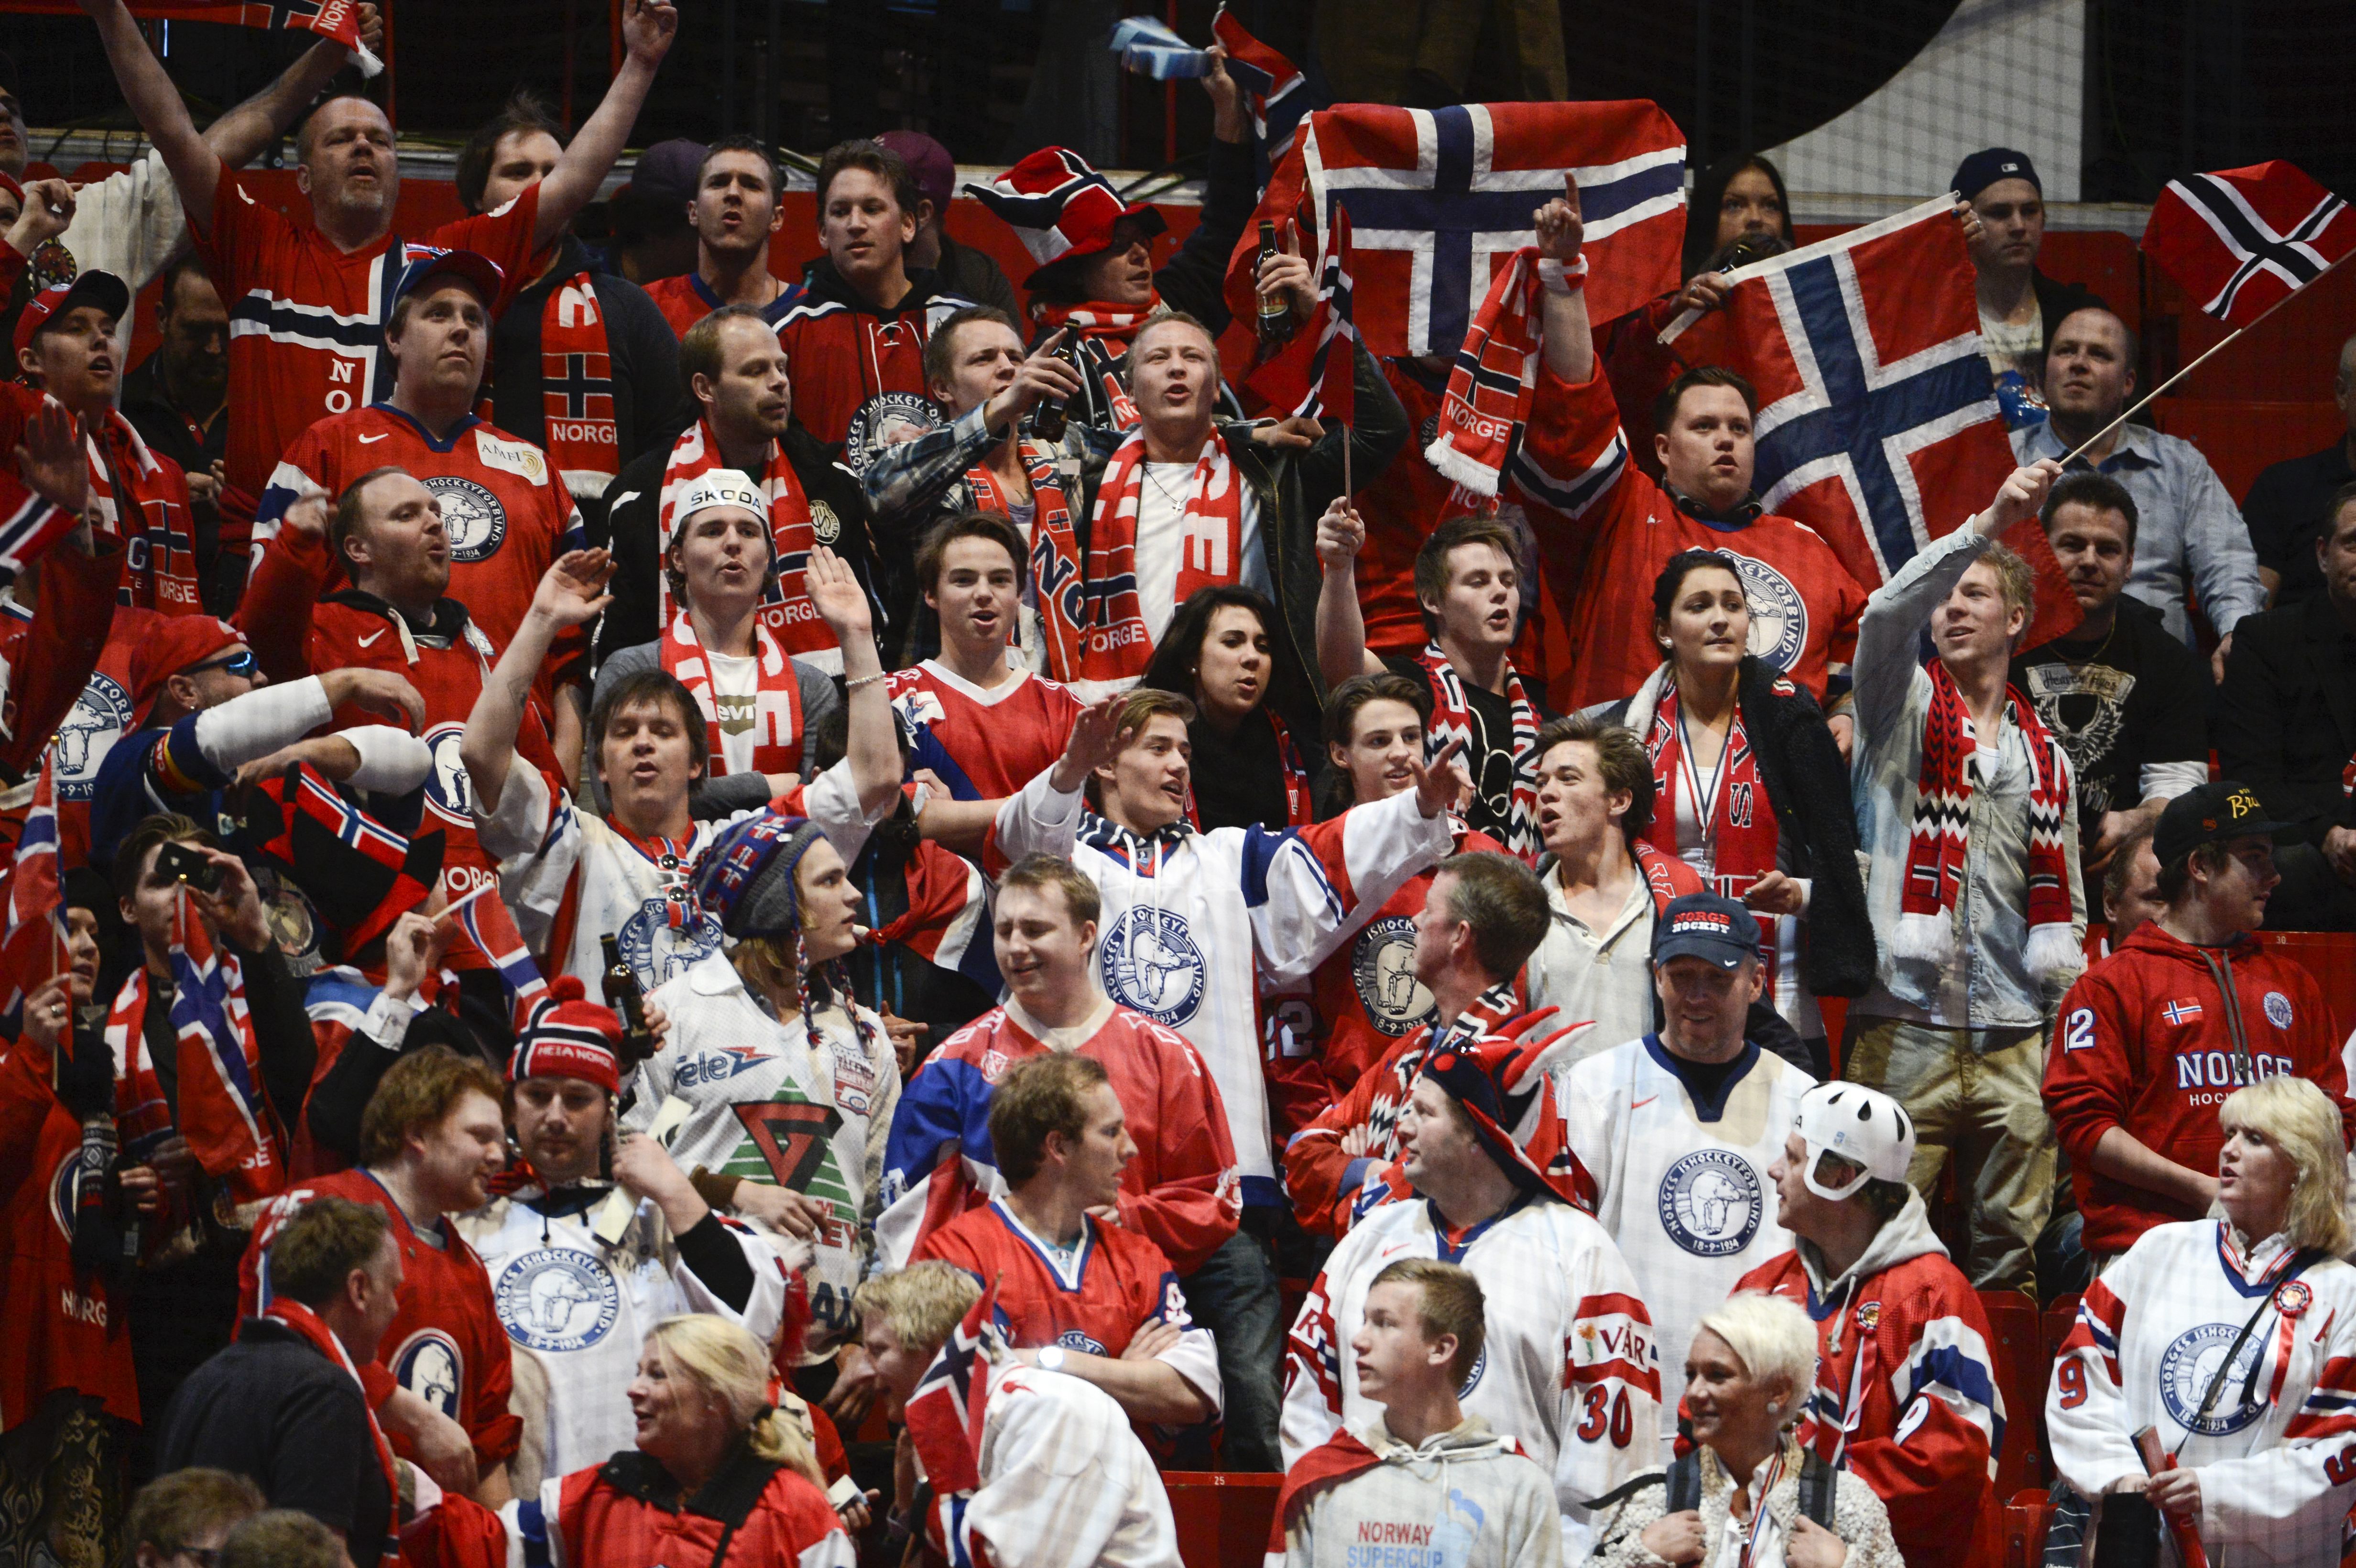 De norska fansen fick inte uppleva någon norsk skräll på sin nationaldag.